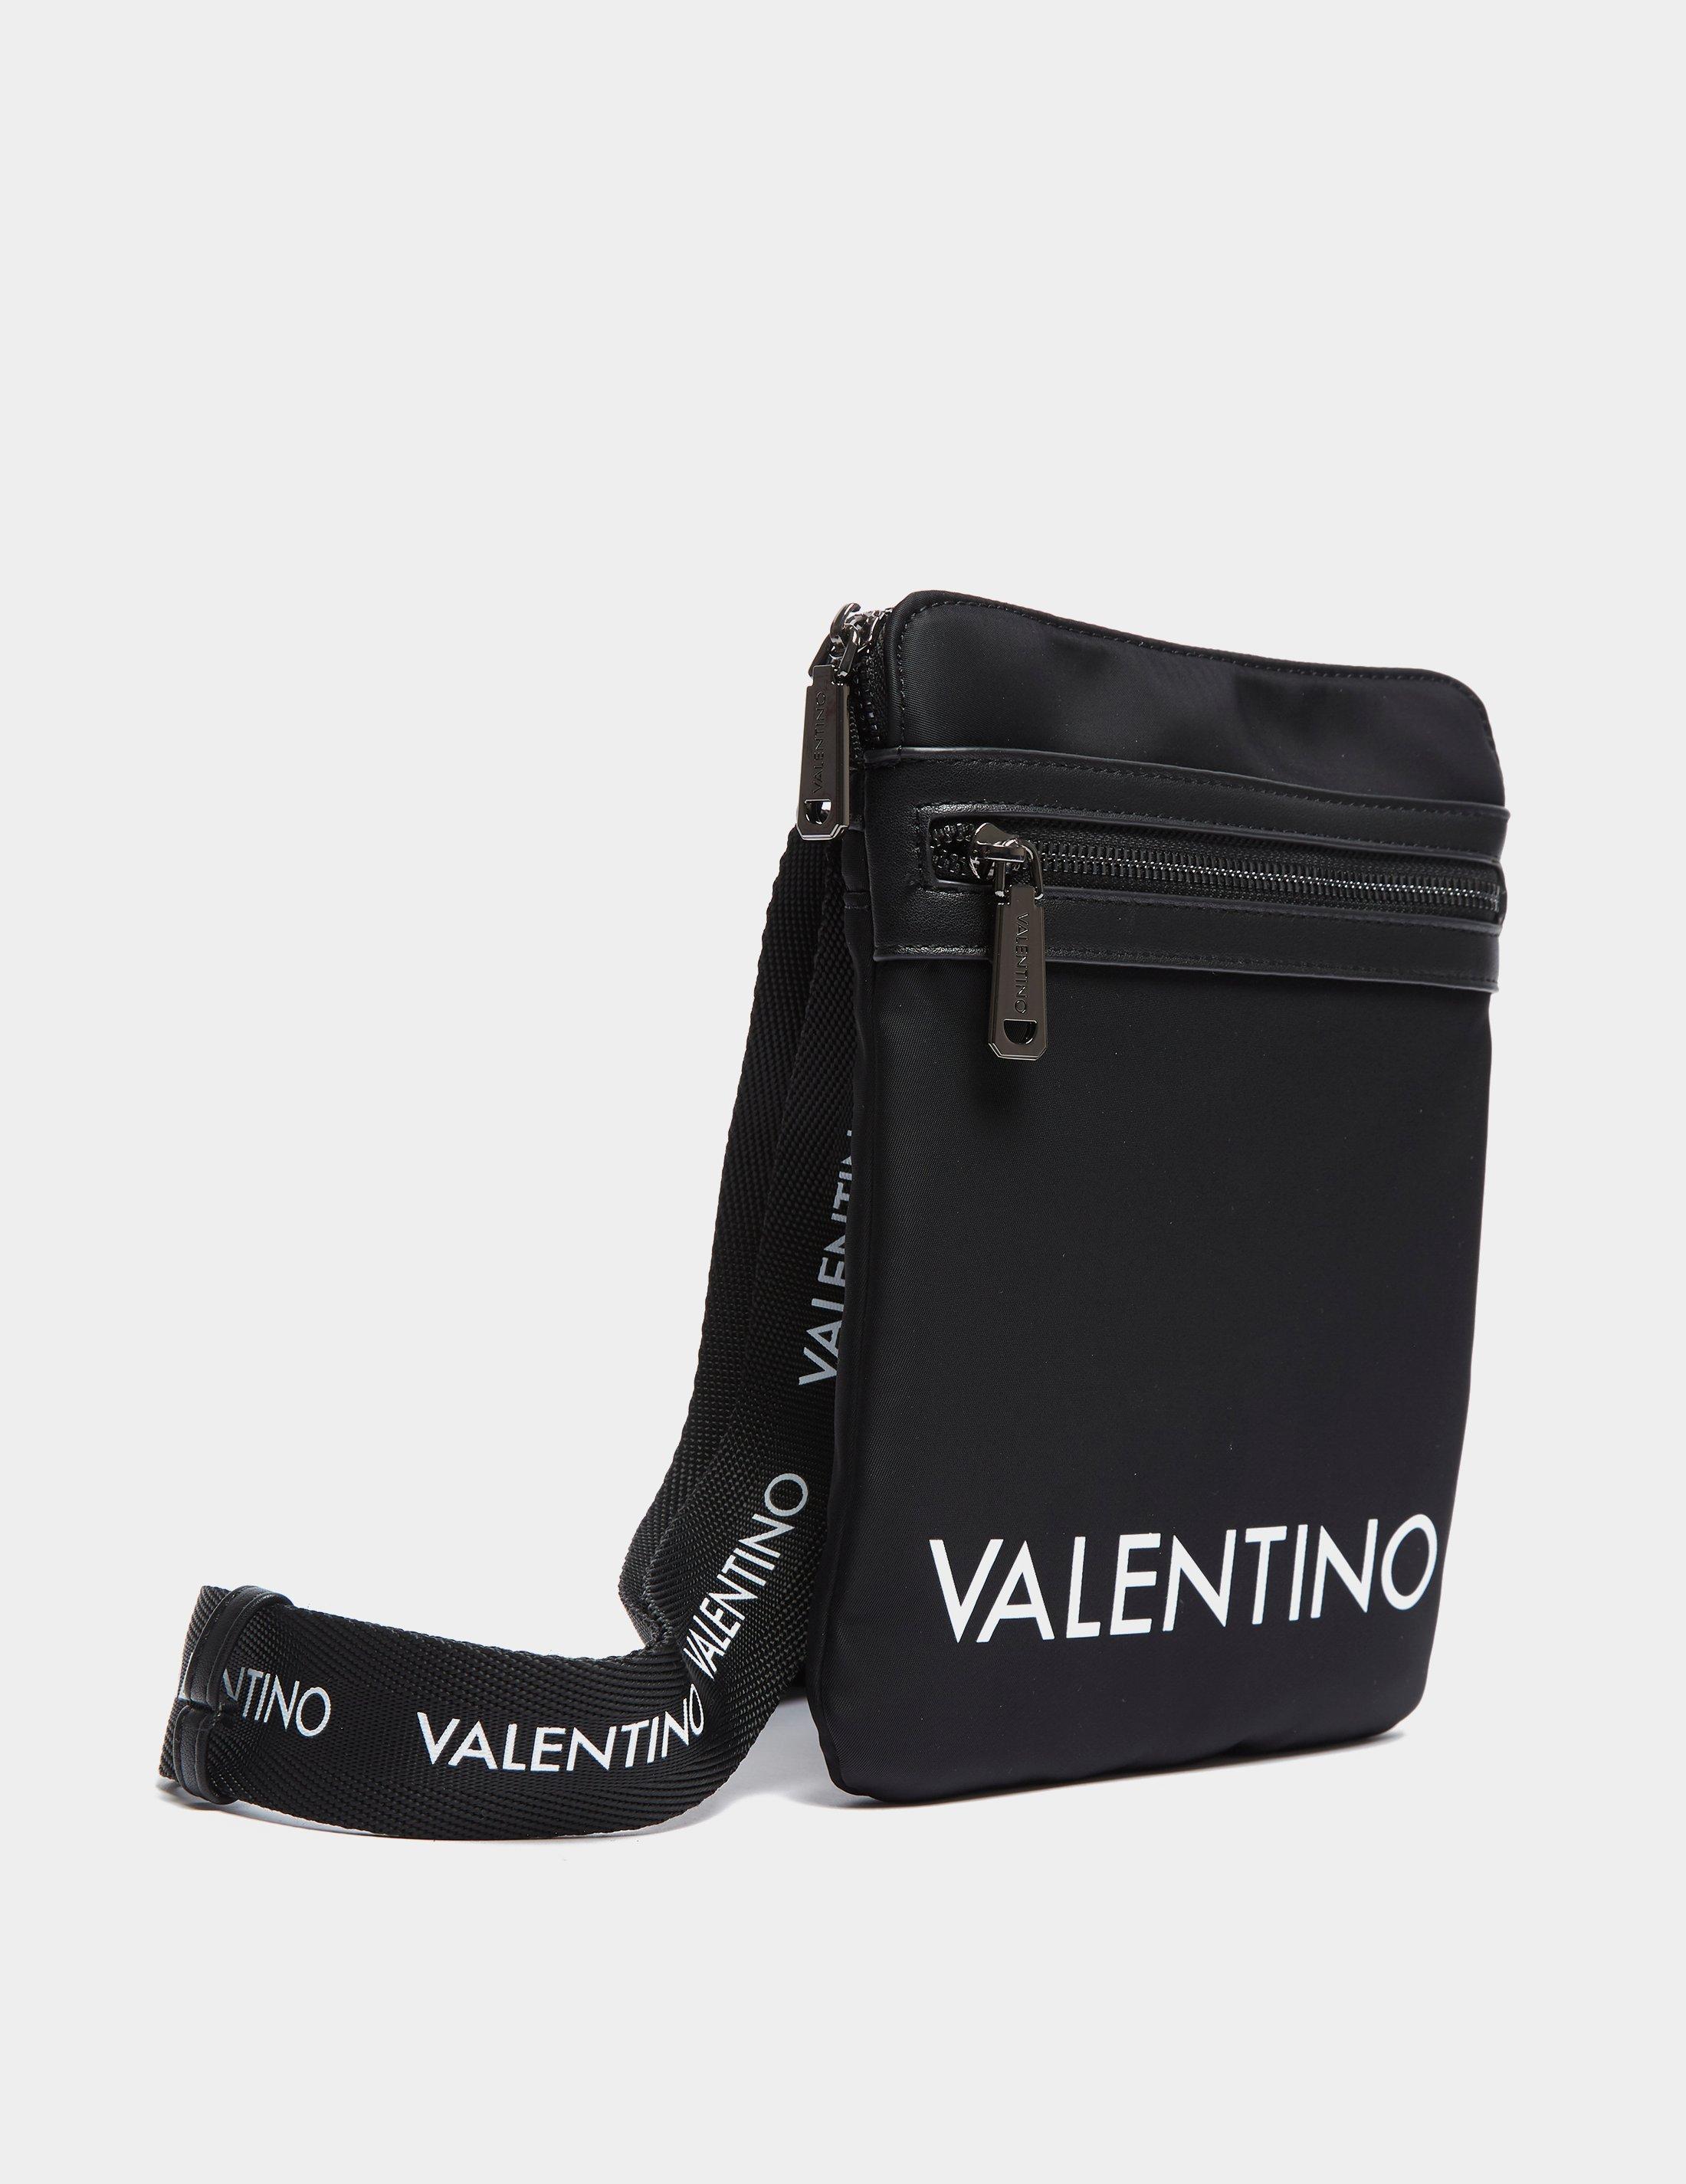 mario valentino messenger bag for OFF 71%